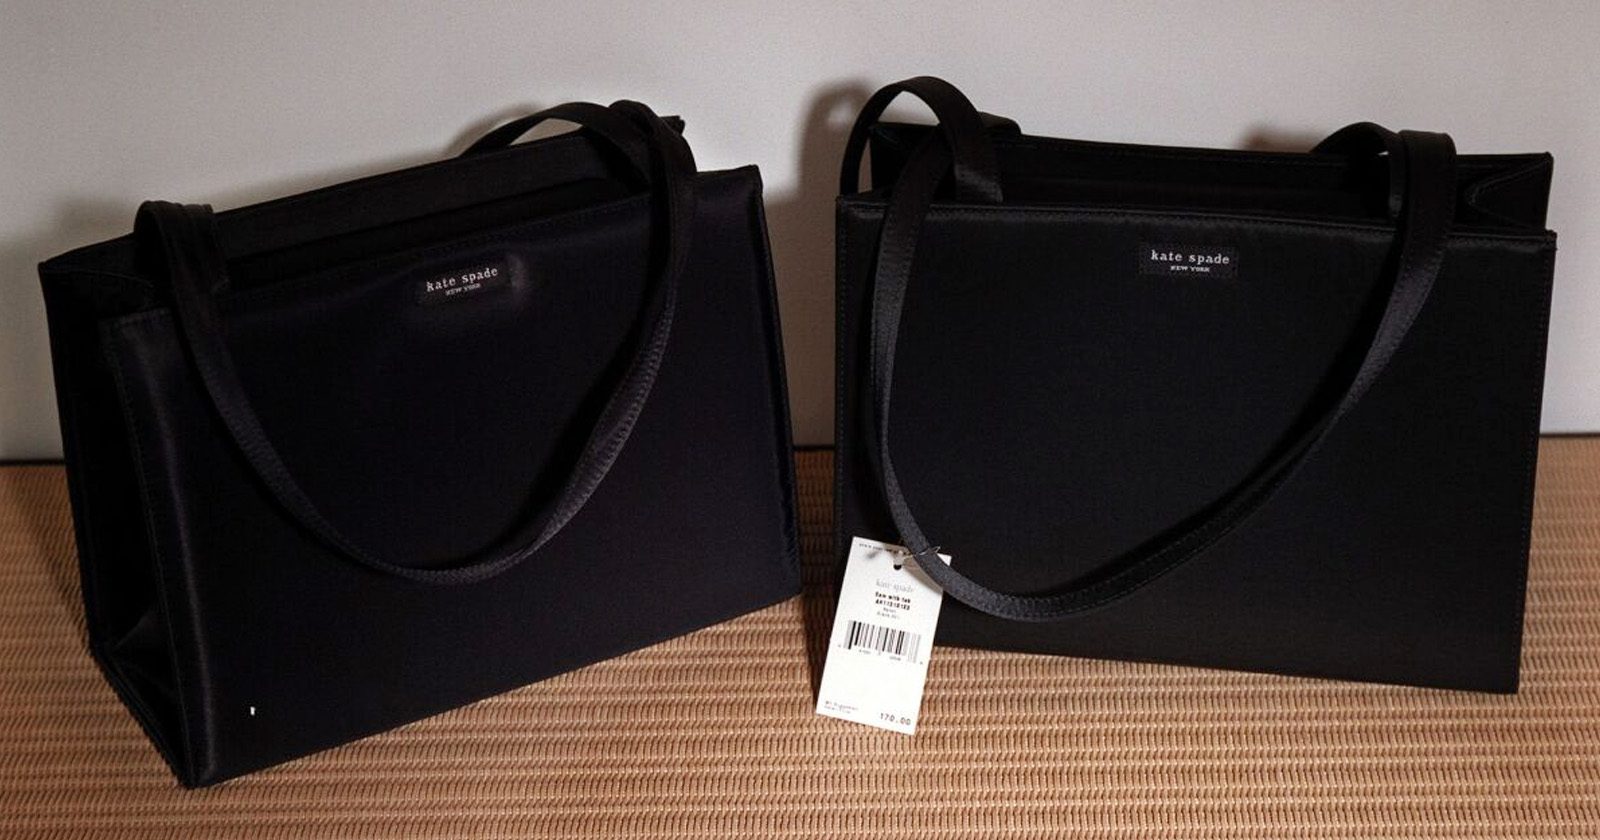 Inilah Cara Membedakan Tas Louis Vuitton yang Asli dan Palsu